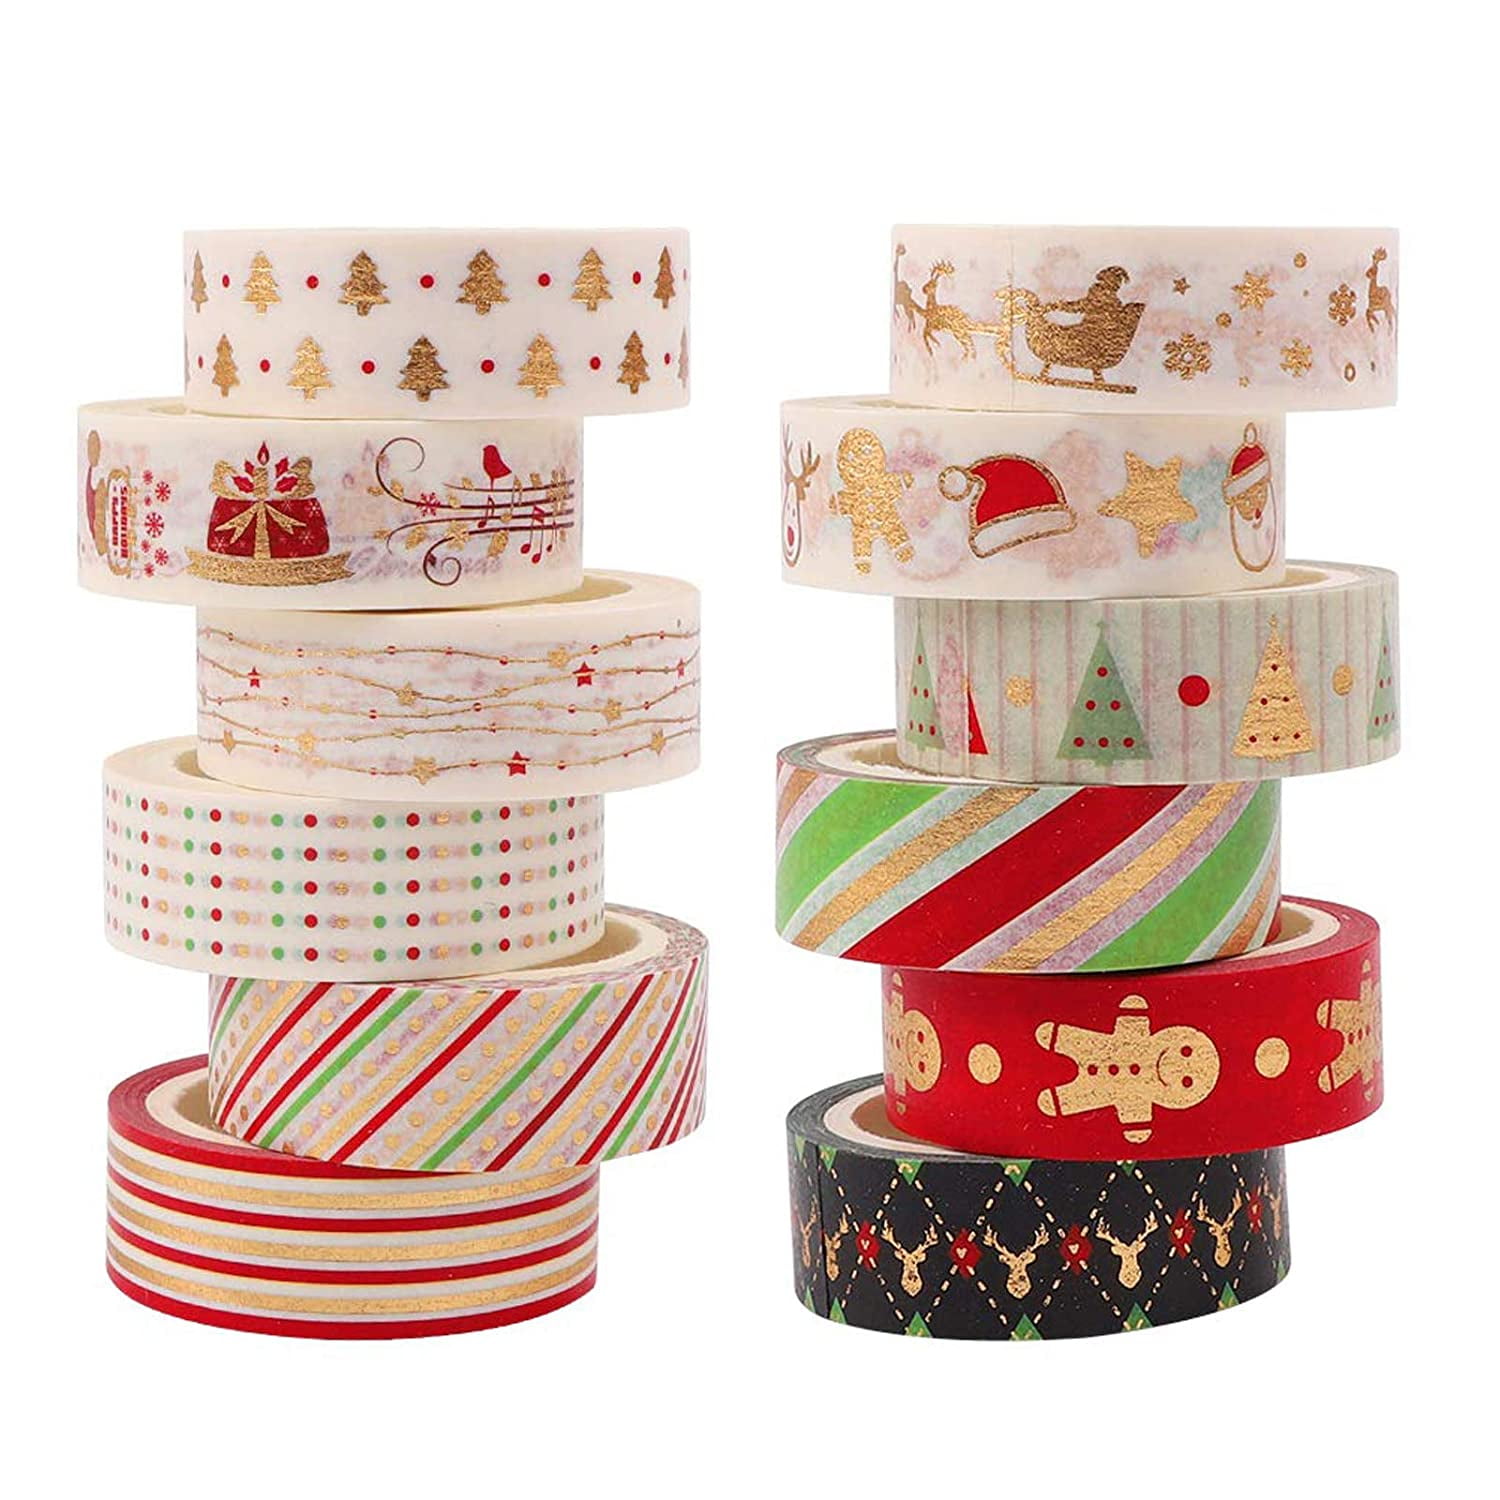 Christmas Washi Tape,Holiday Washi Tape,Red Green Pink Blue Washi  Tape,Snowflake Washi Tape Clip Art,Digital Washi Tape